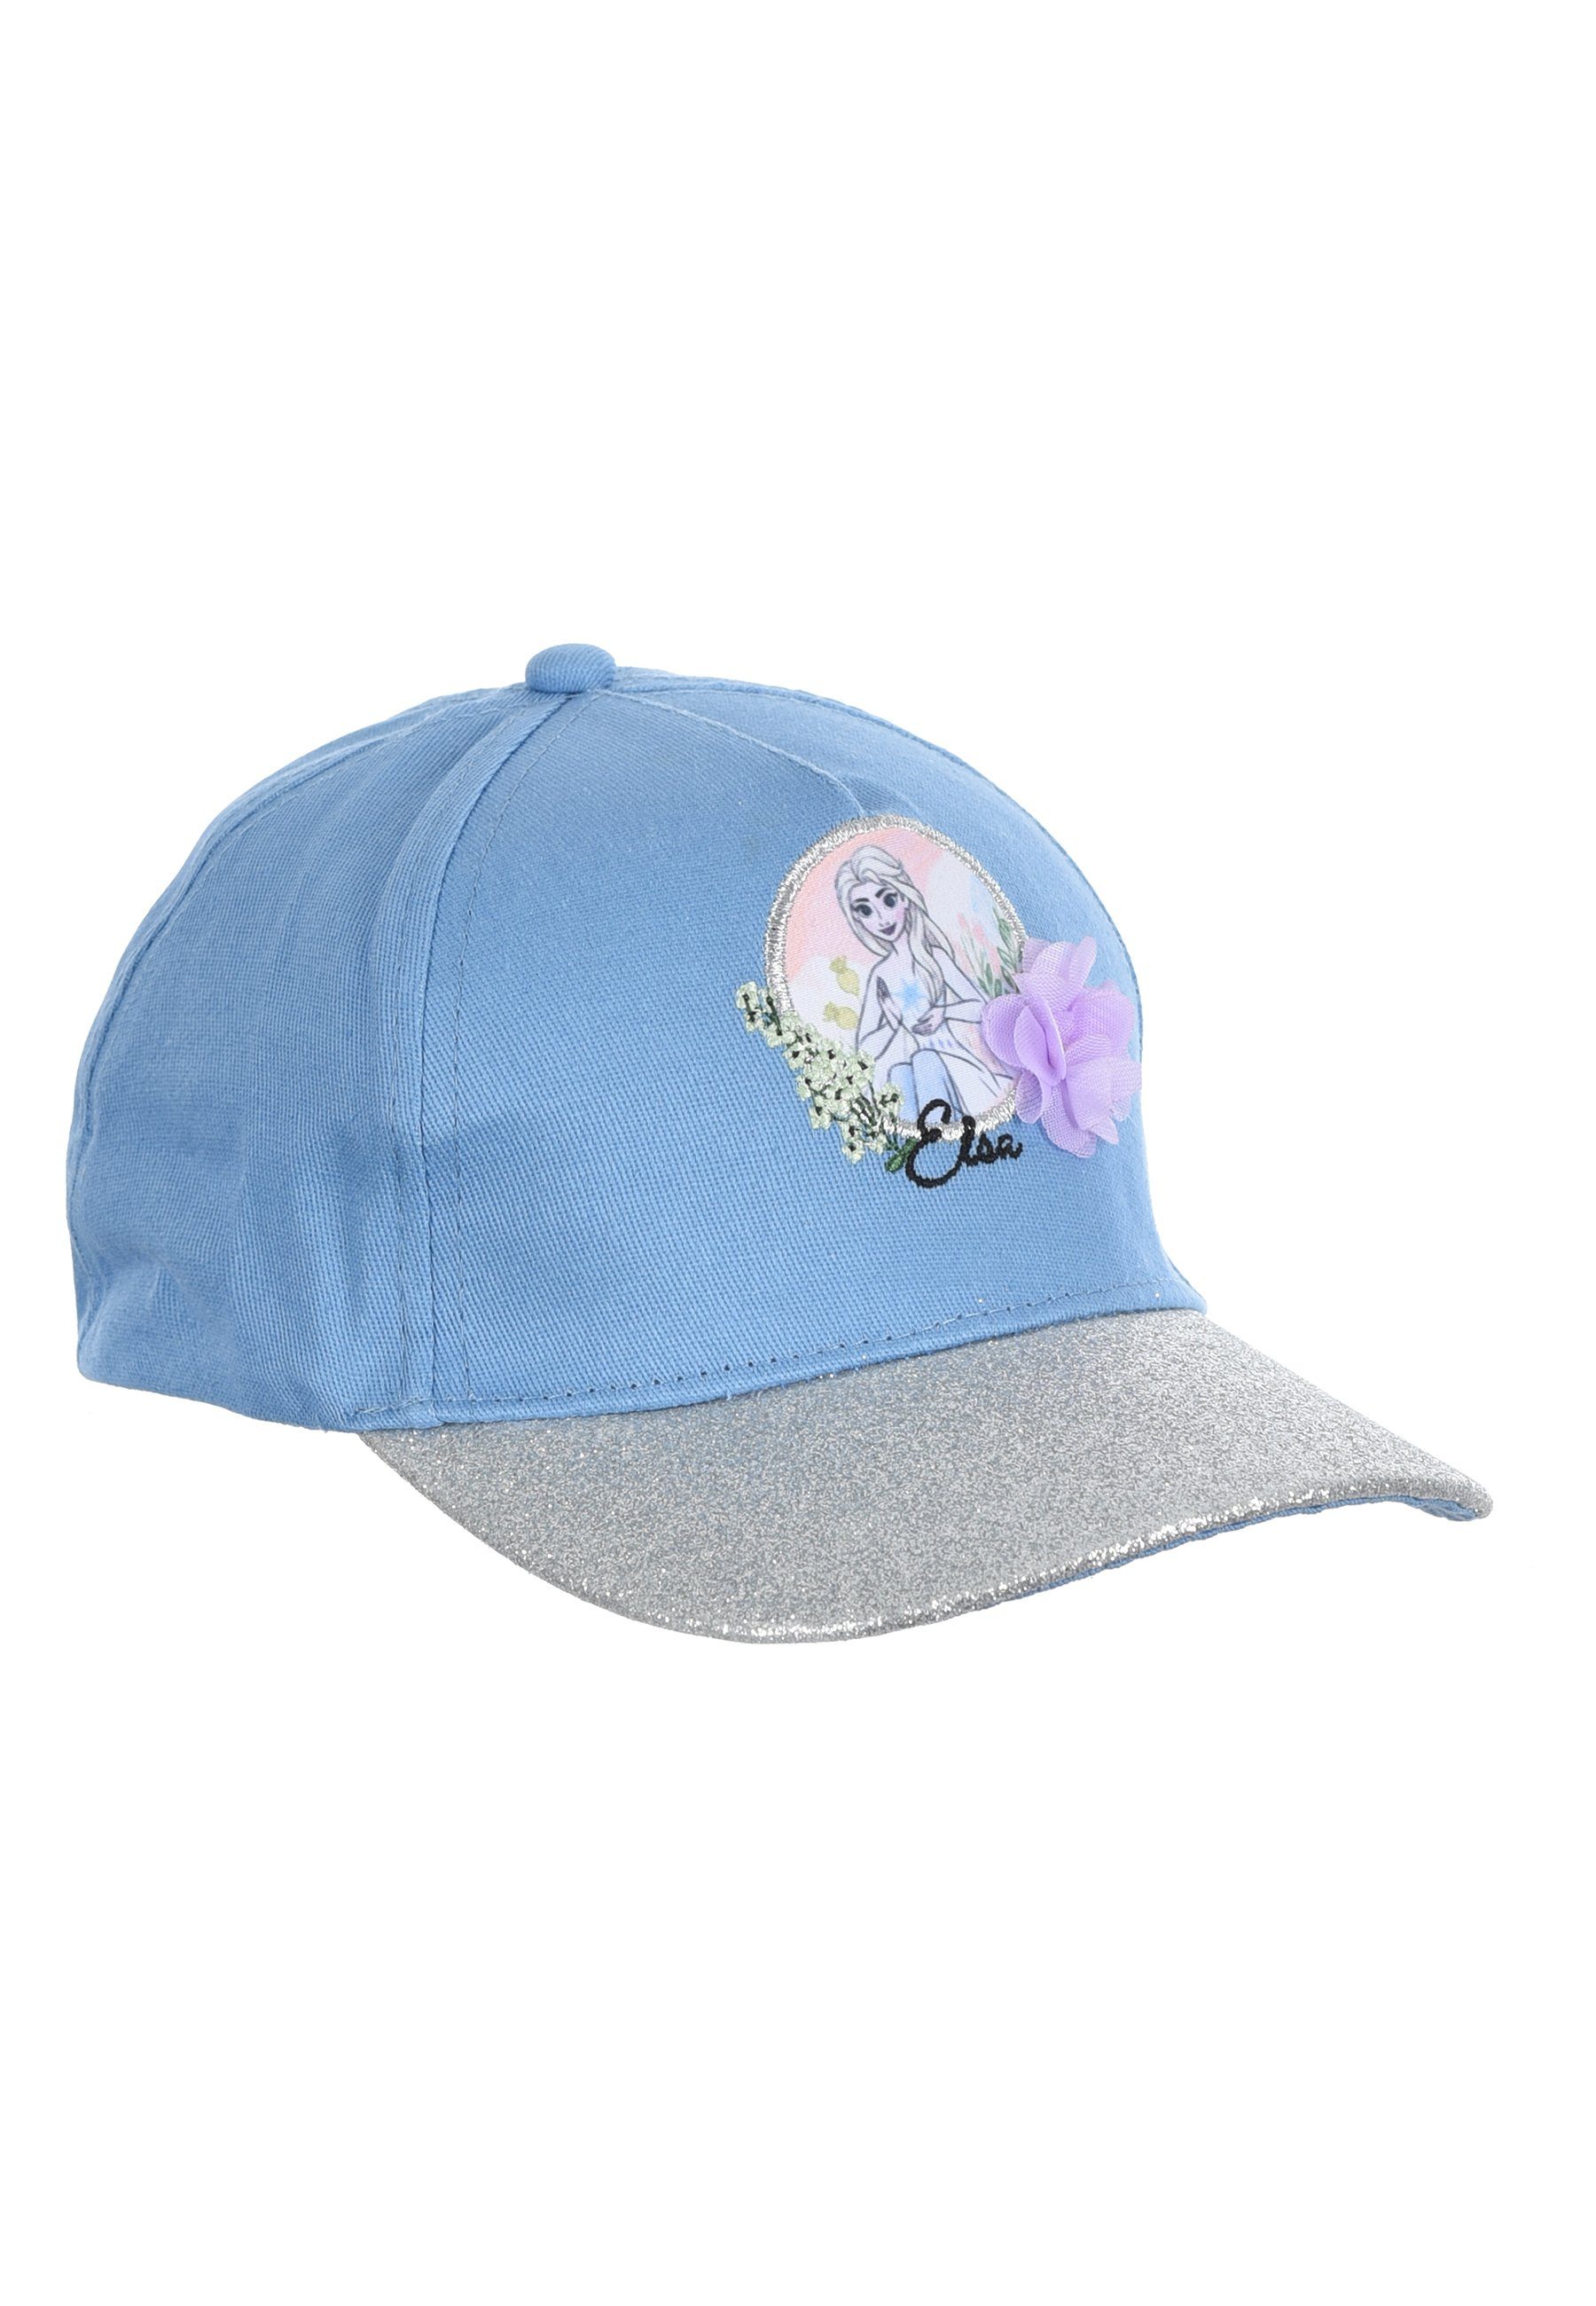 Kappe Hell-Blau Elsa Frozen Disney Mütze Cap Baseball